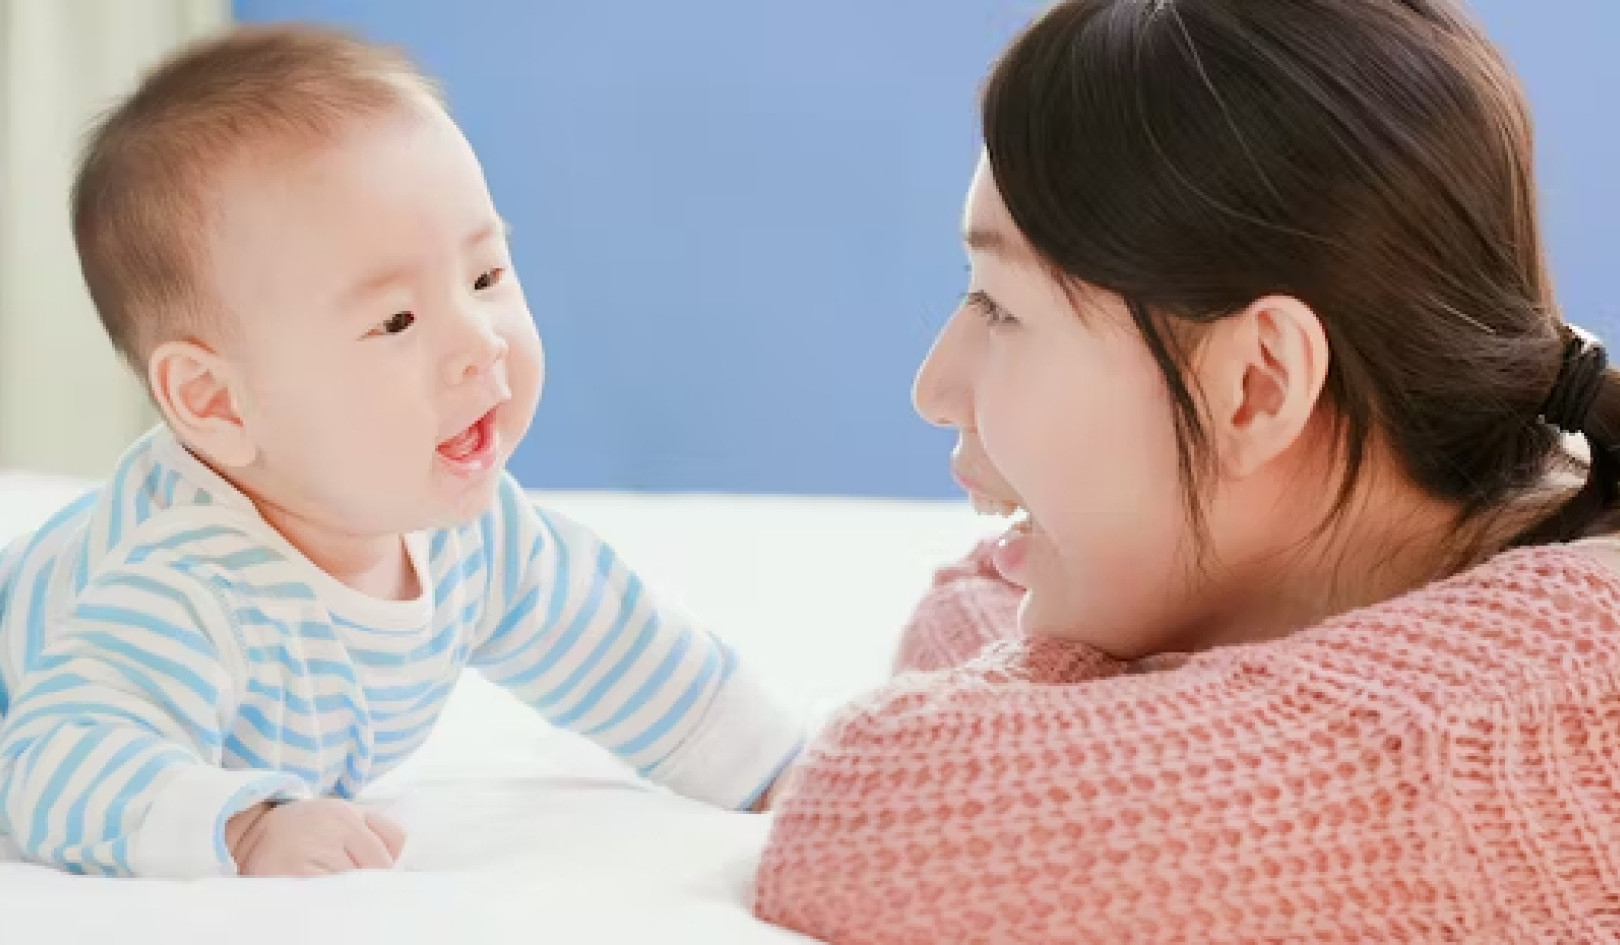 صحبت کردن با نوزادان ممکن است به رشد مغز کمک کند - در اینجا نحوه انجام آن آمده است